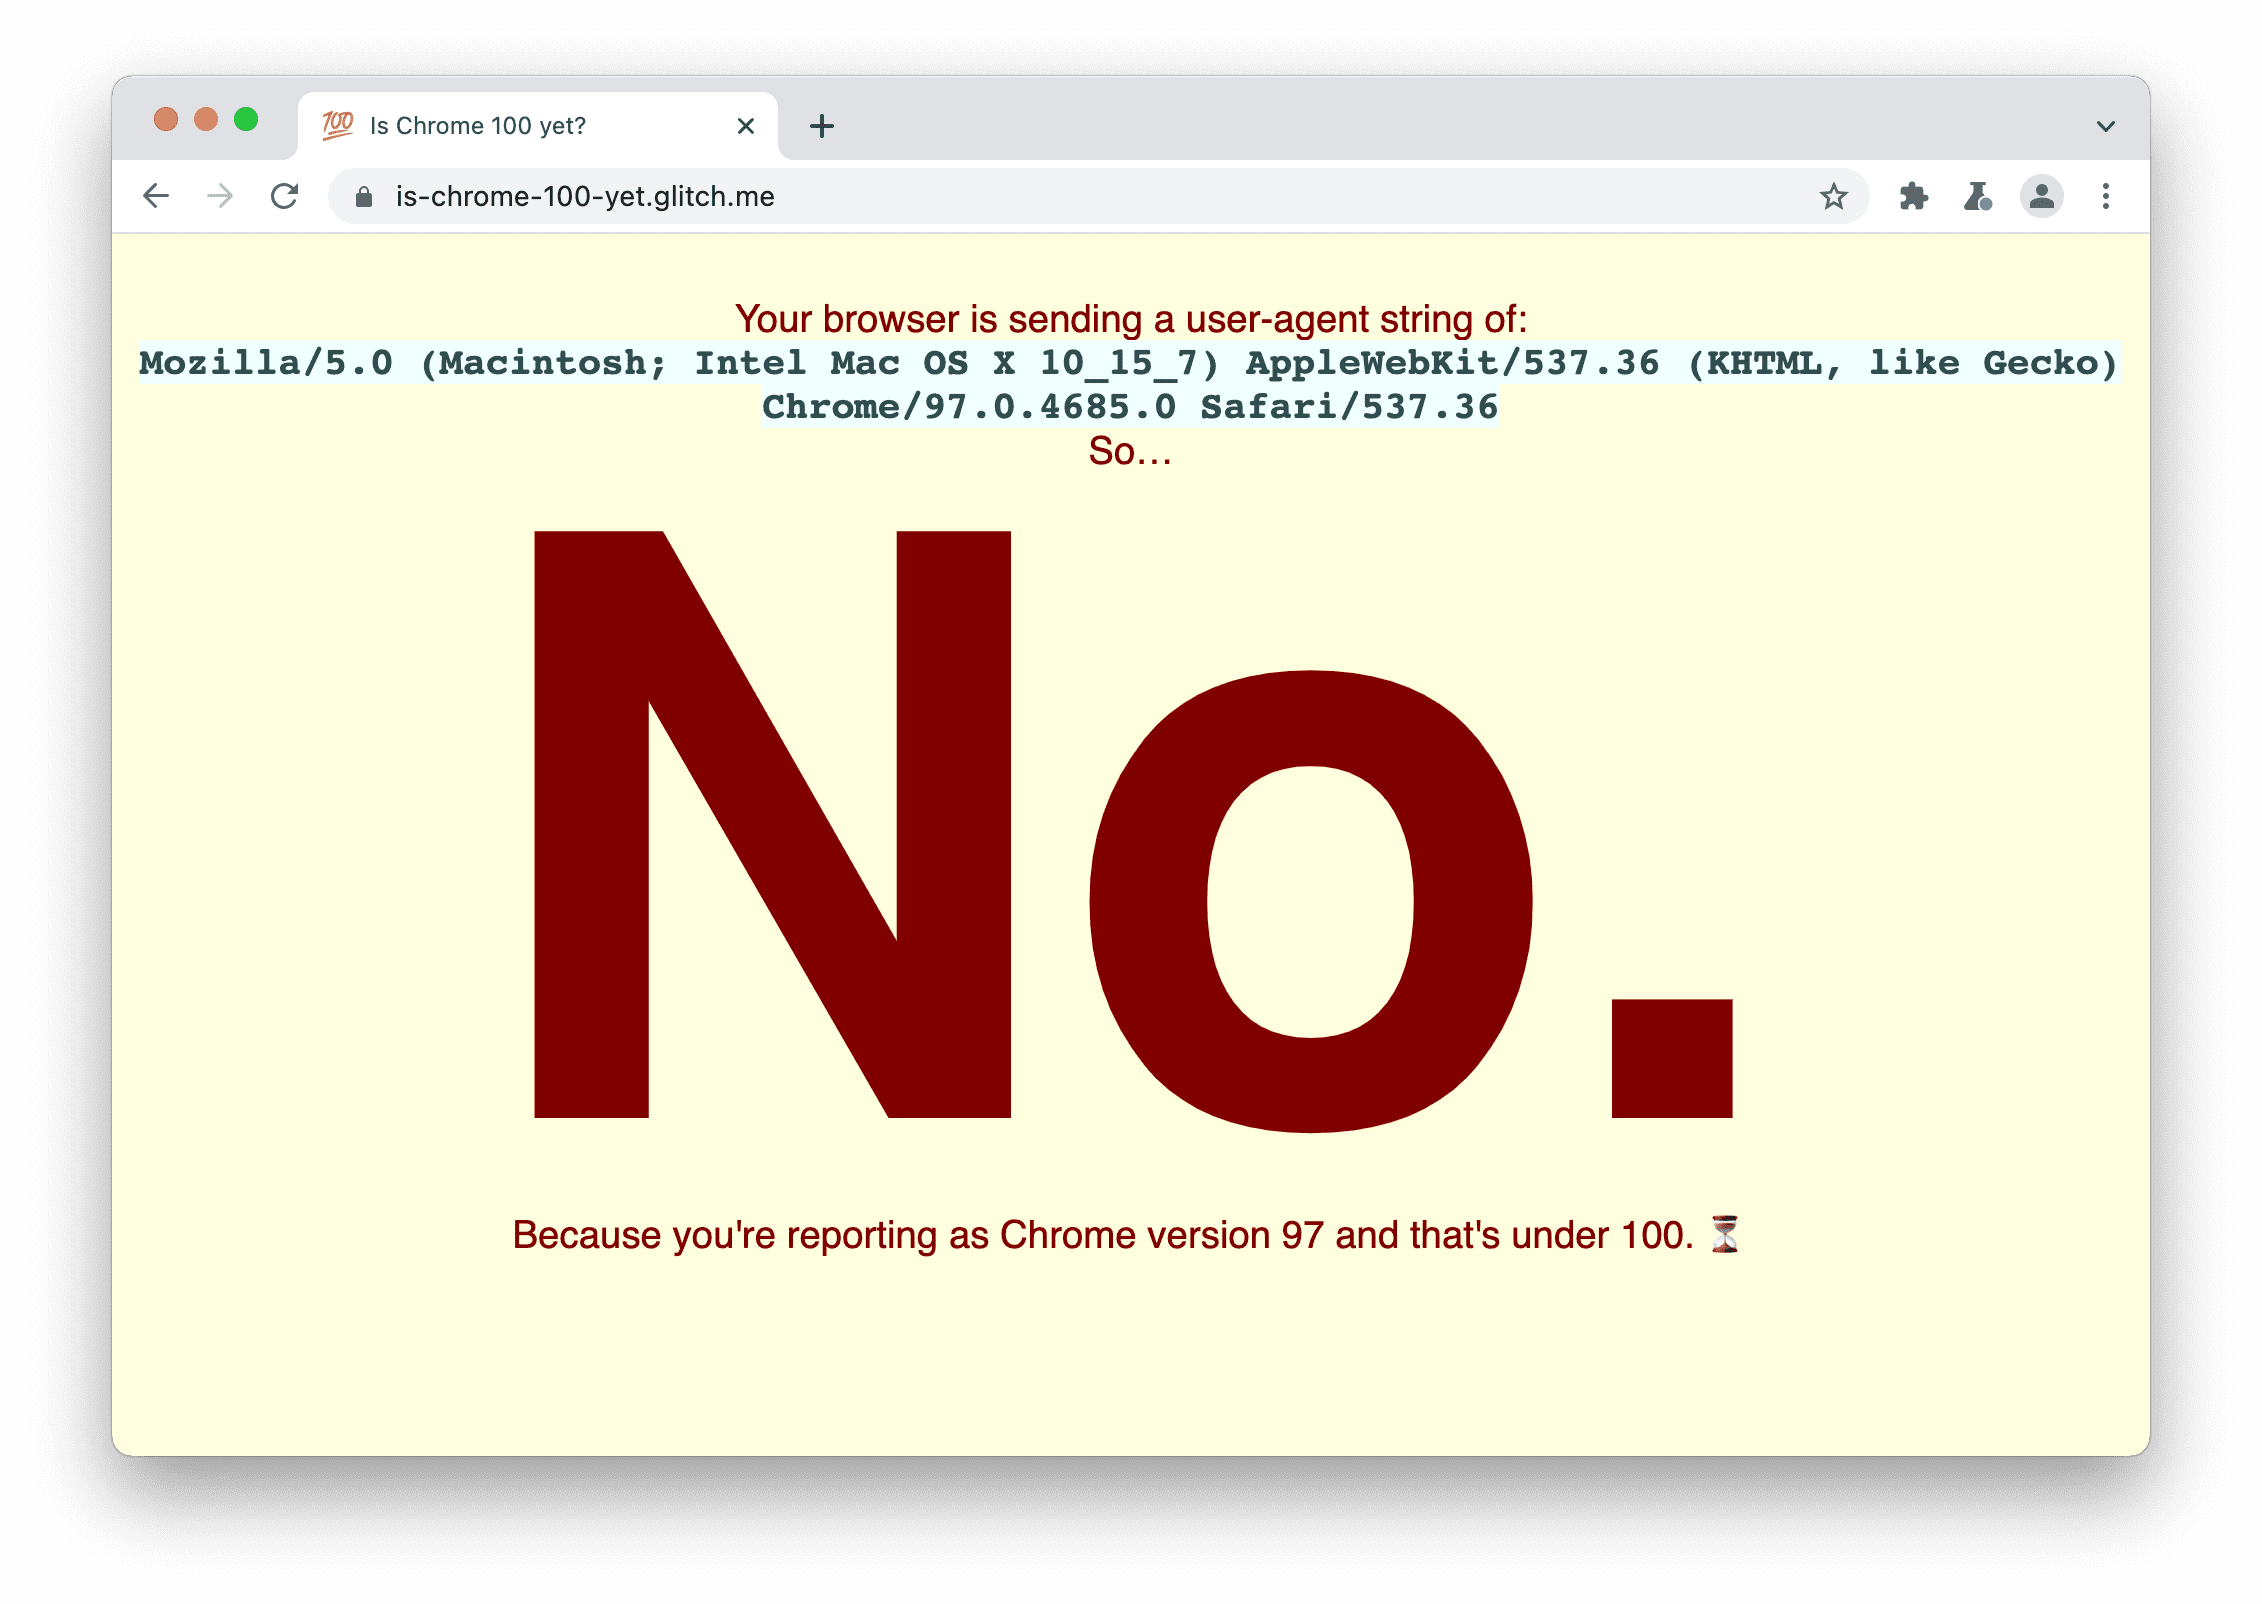 אתר שבודק אם הדפדפן שולח את מחרוזת סוכן המשתמש 100. מוצג ההודעה: לא, כי דיווחת כ-Chrome בגרסה 97 ומטה.